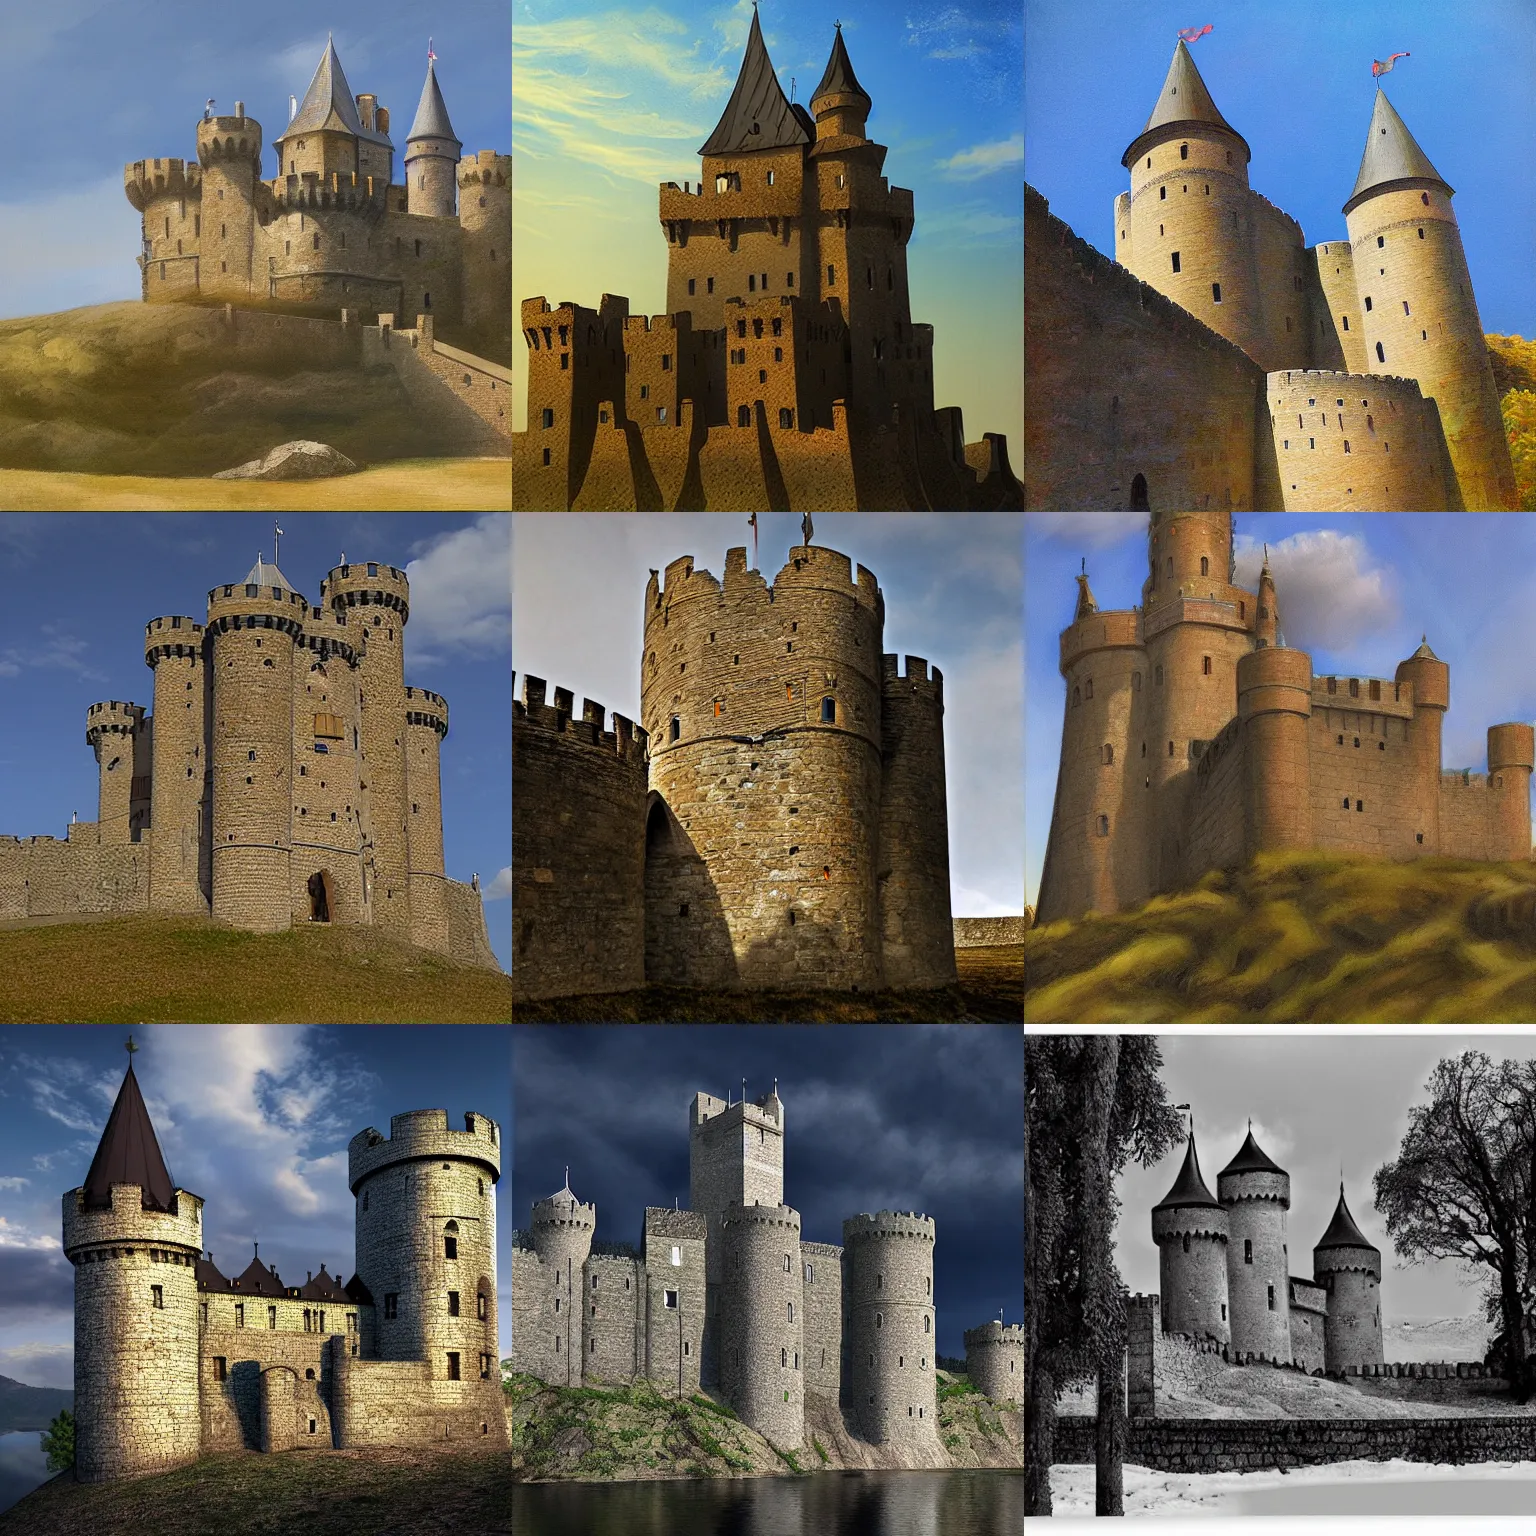 Prompt: medieval castle, by Vladimir Suteev